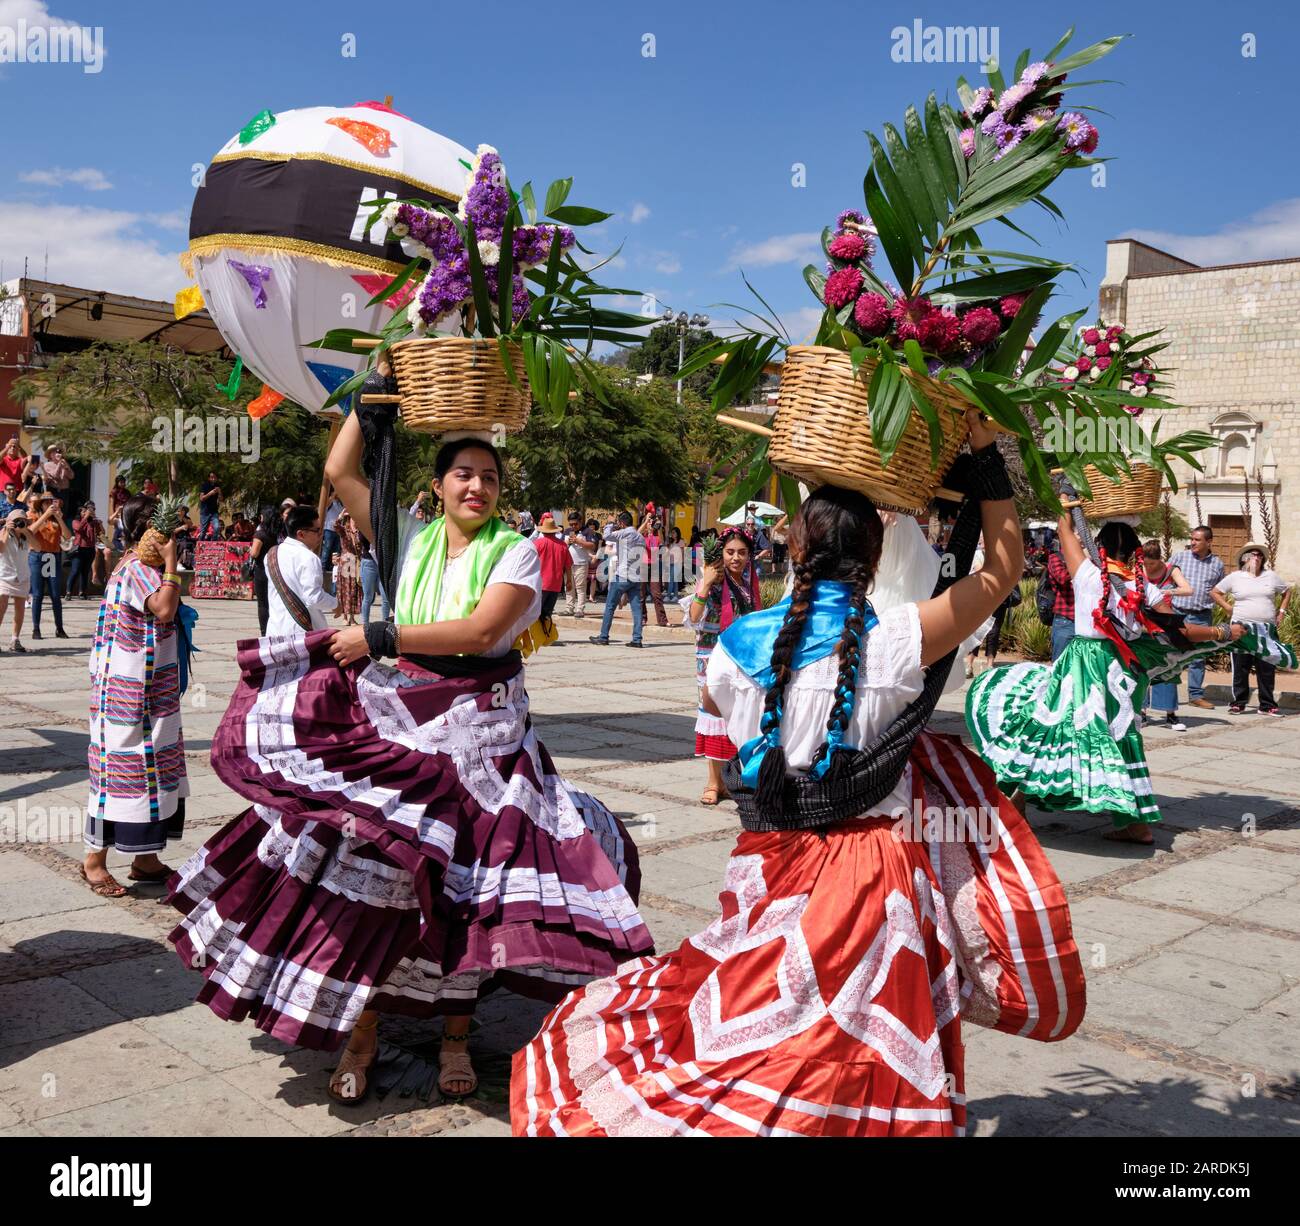 Femme dansant dans un ensemble traditionnel fluide avec panier de fleurs partie de défilé traditionnel (Calenda de Bodas) dans les rues d'Oaxaca. Banque D'Images